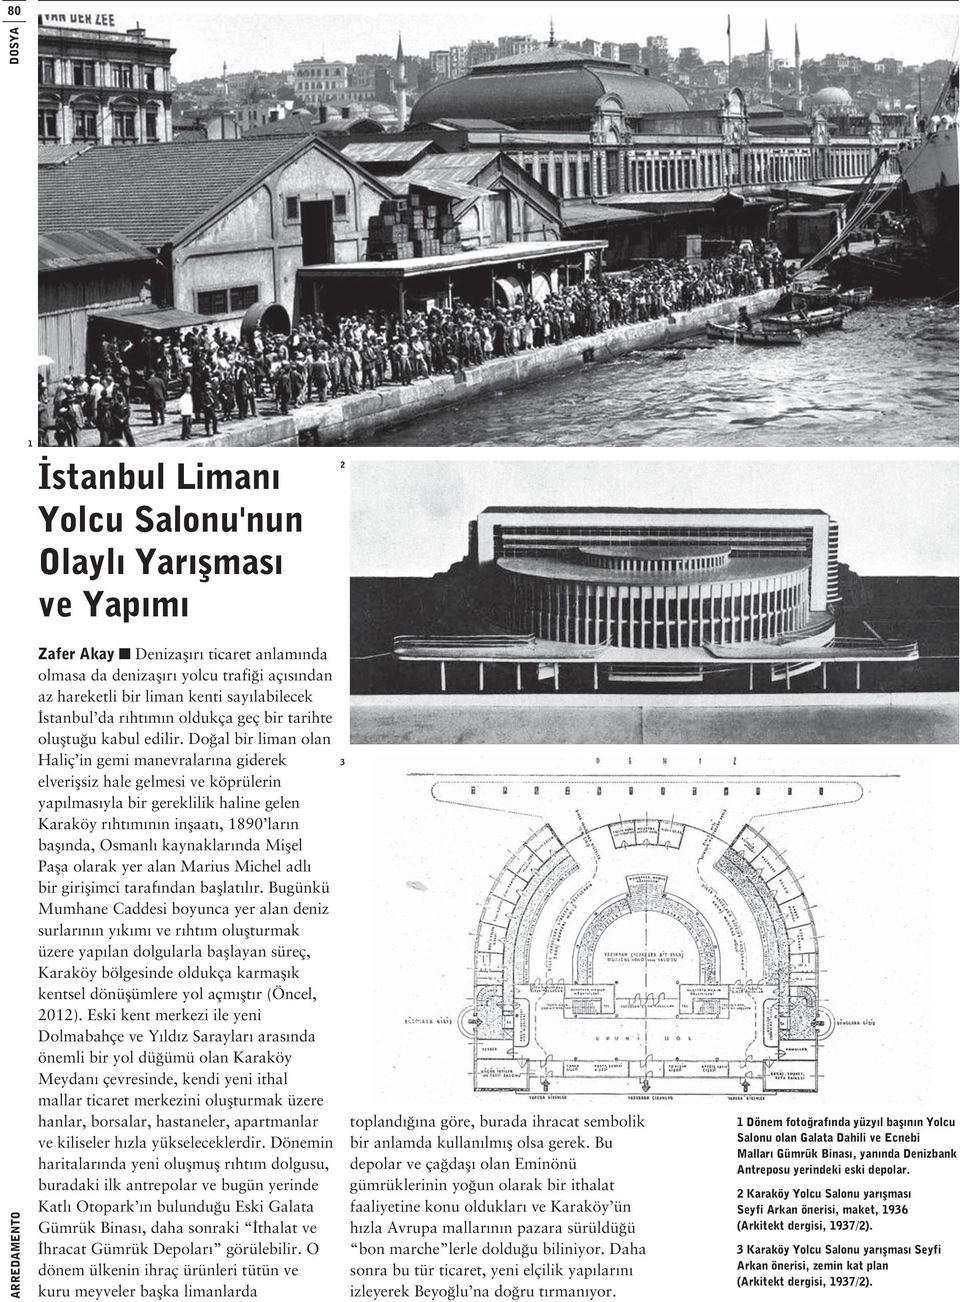 Doğal bir liman olan Haliç in gemi manevralarına giderek elverişsiz hale gelmesi ve köprülerin yapılmasıyla bir gereklilik haline gelen Karaköy rıhtımının inşaatı, 1890 ların başında, Osmanlı